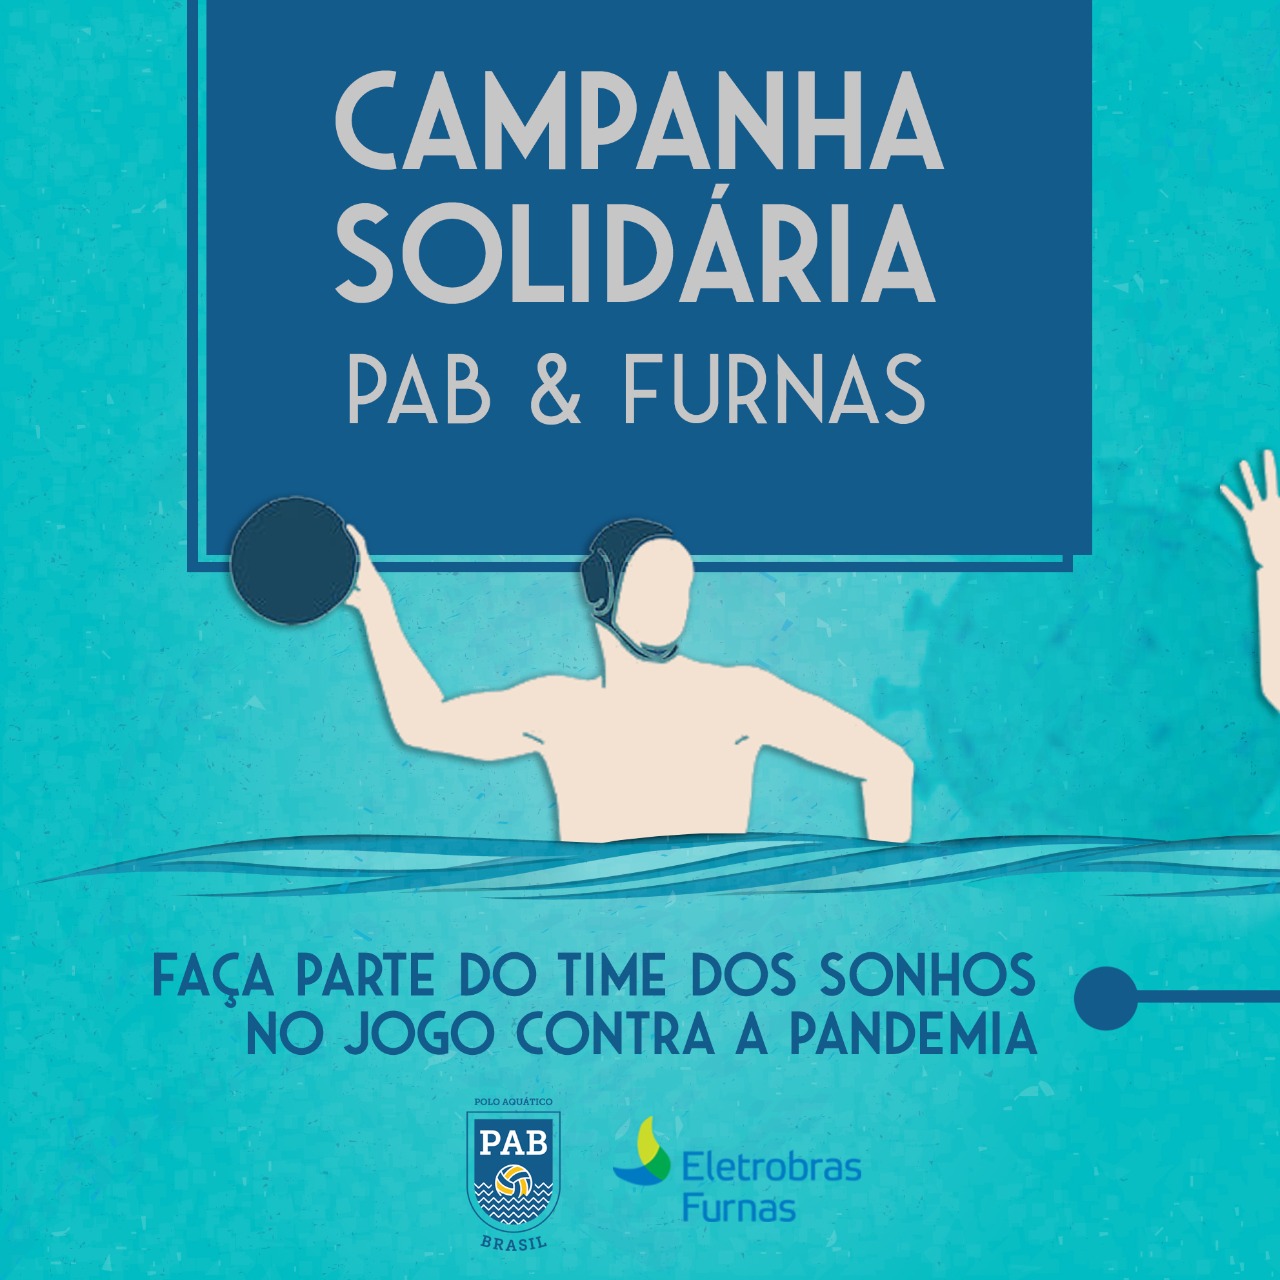 Campanha Solidária PAB